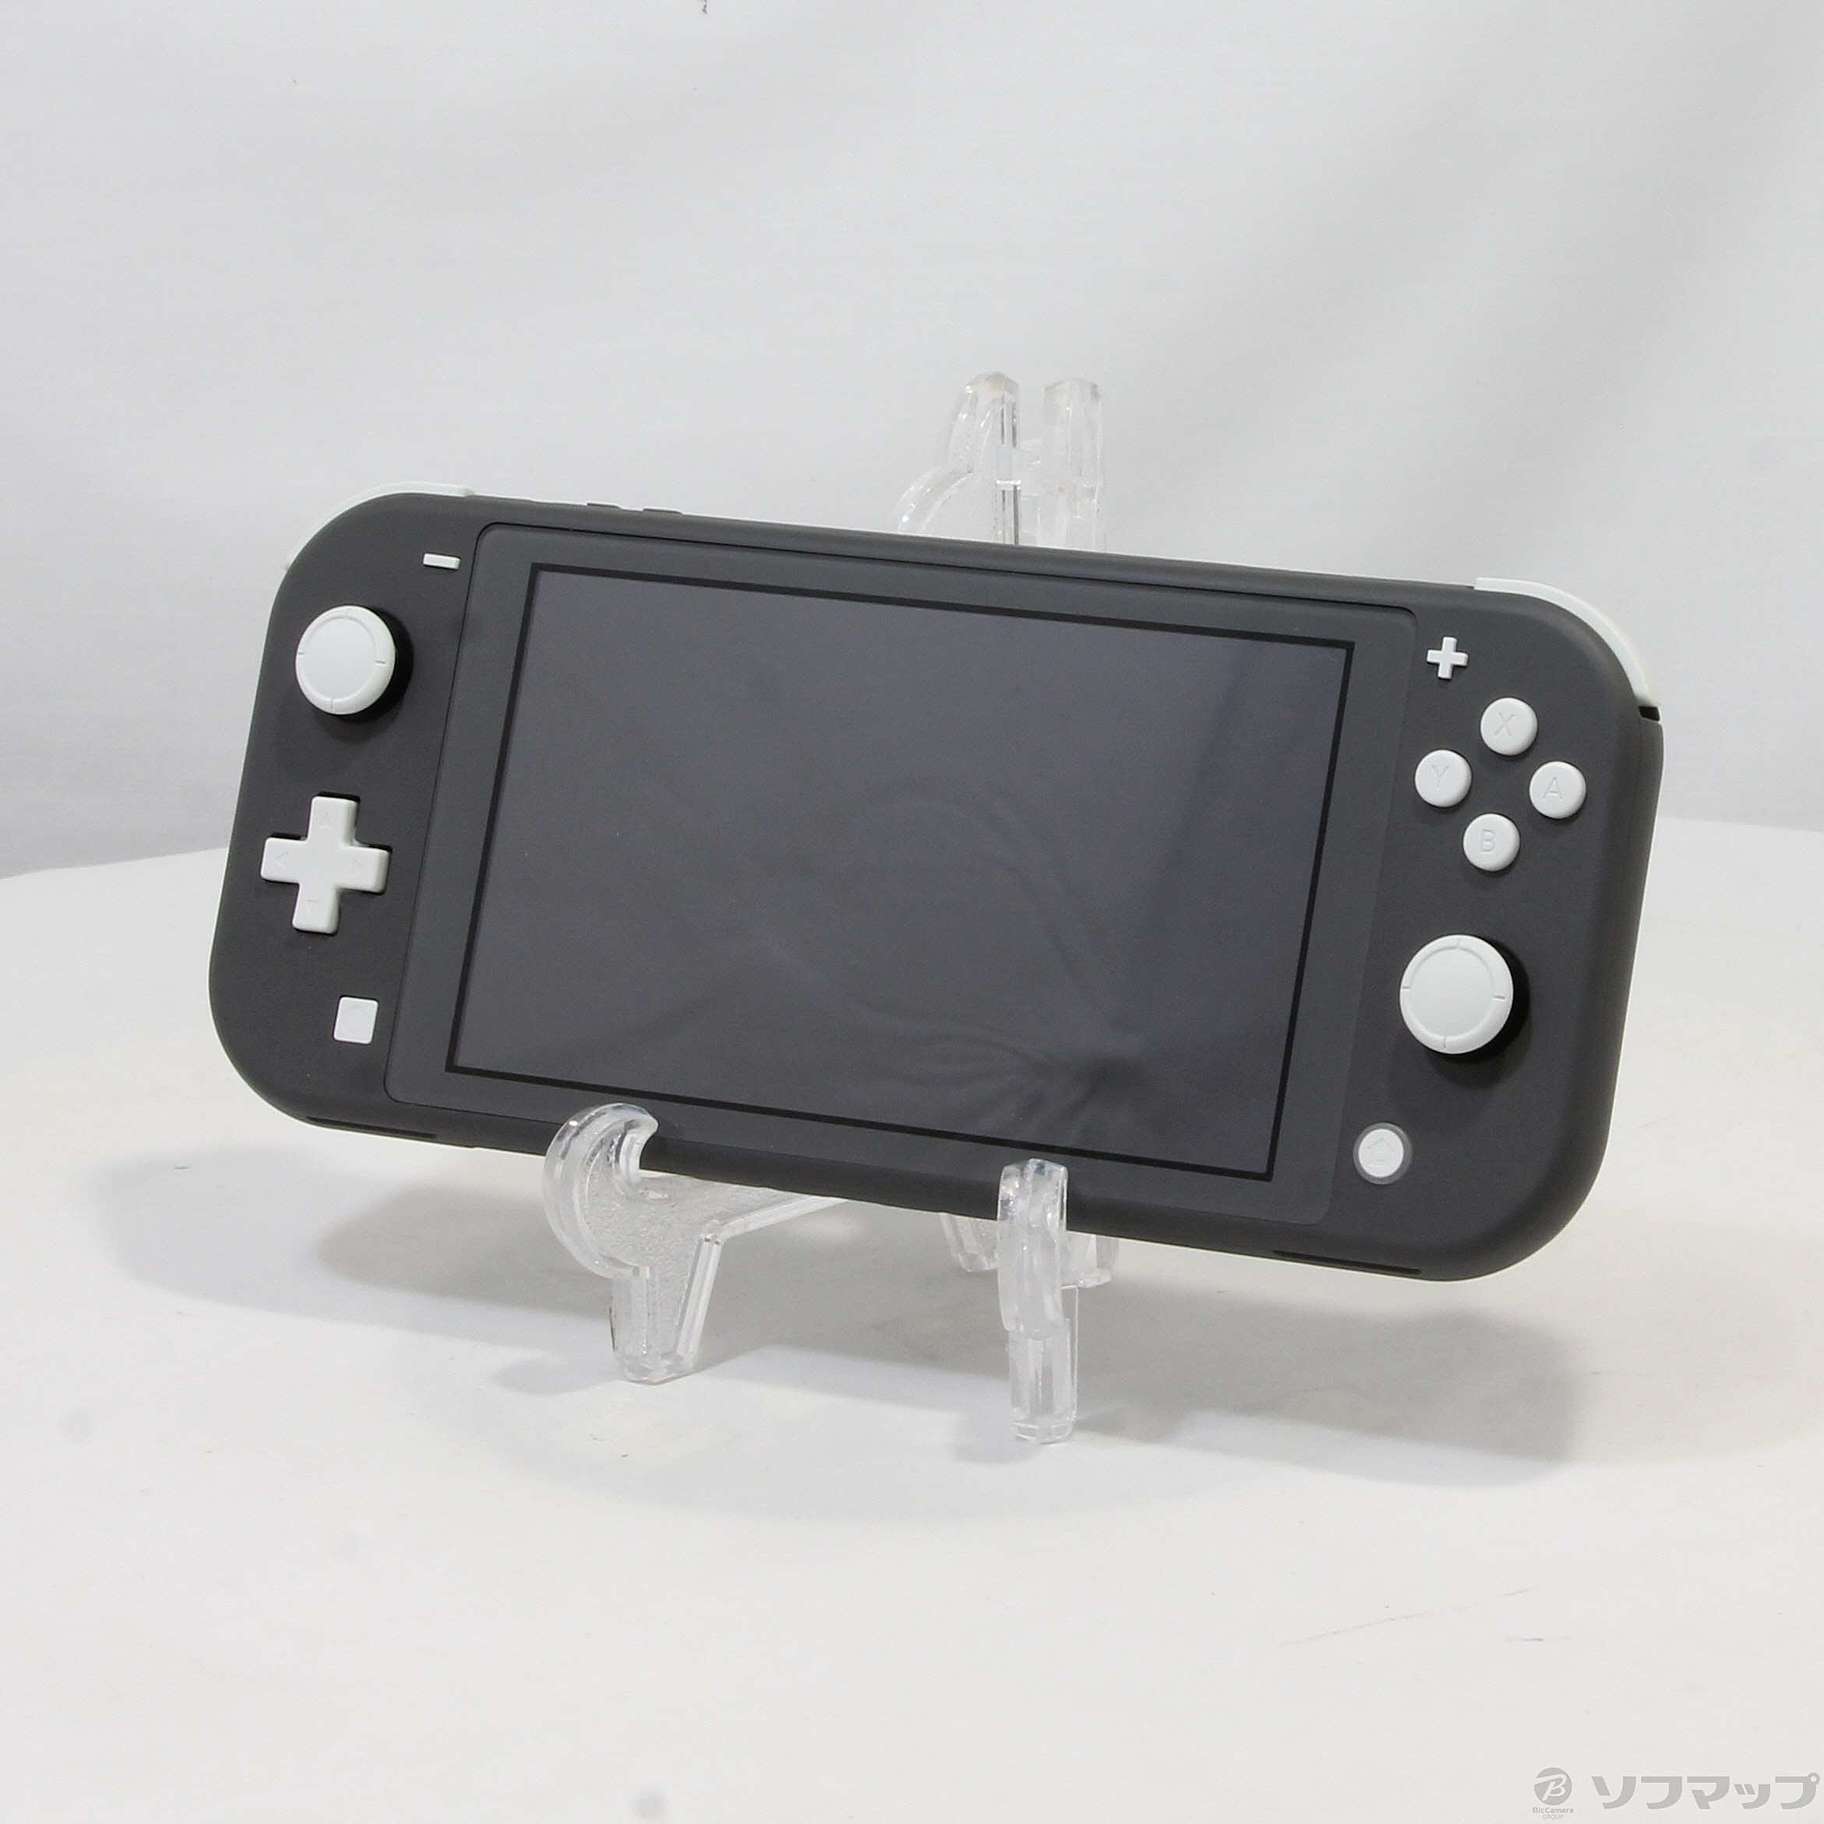 中古ジャンク品 Nintendo Switch LITE グレー本体